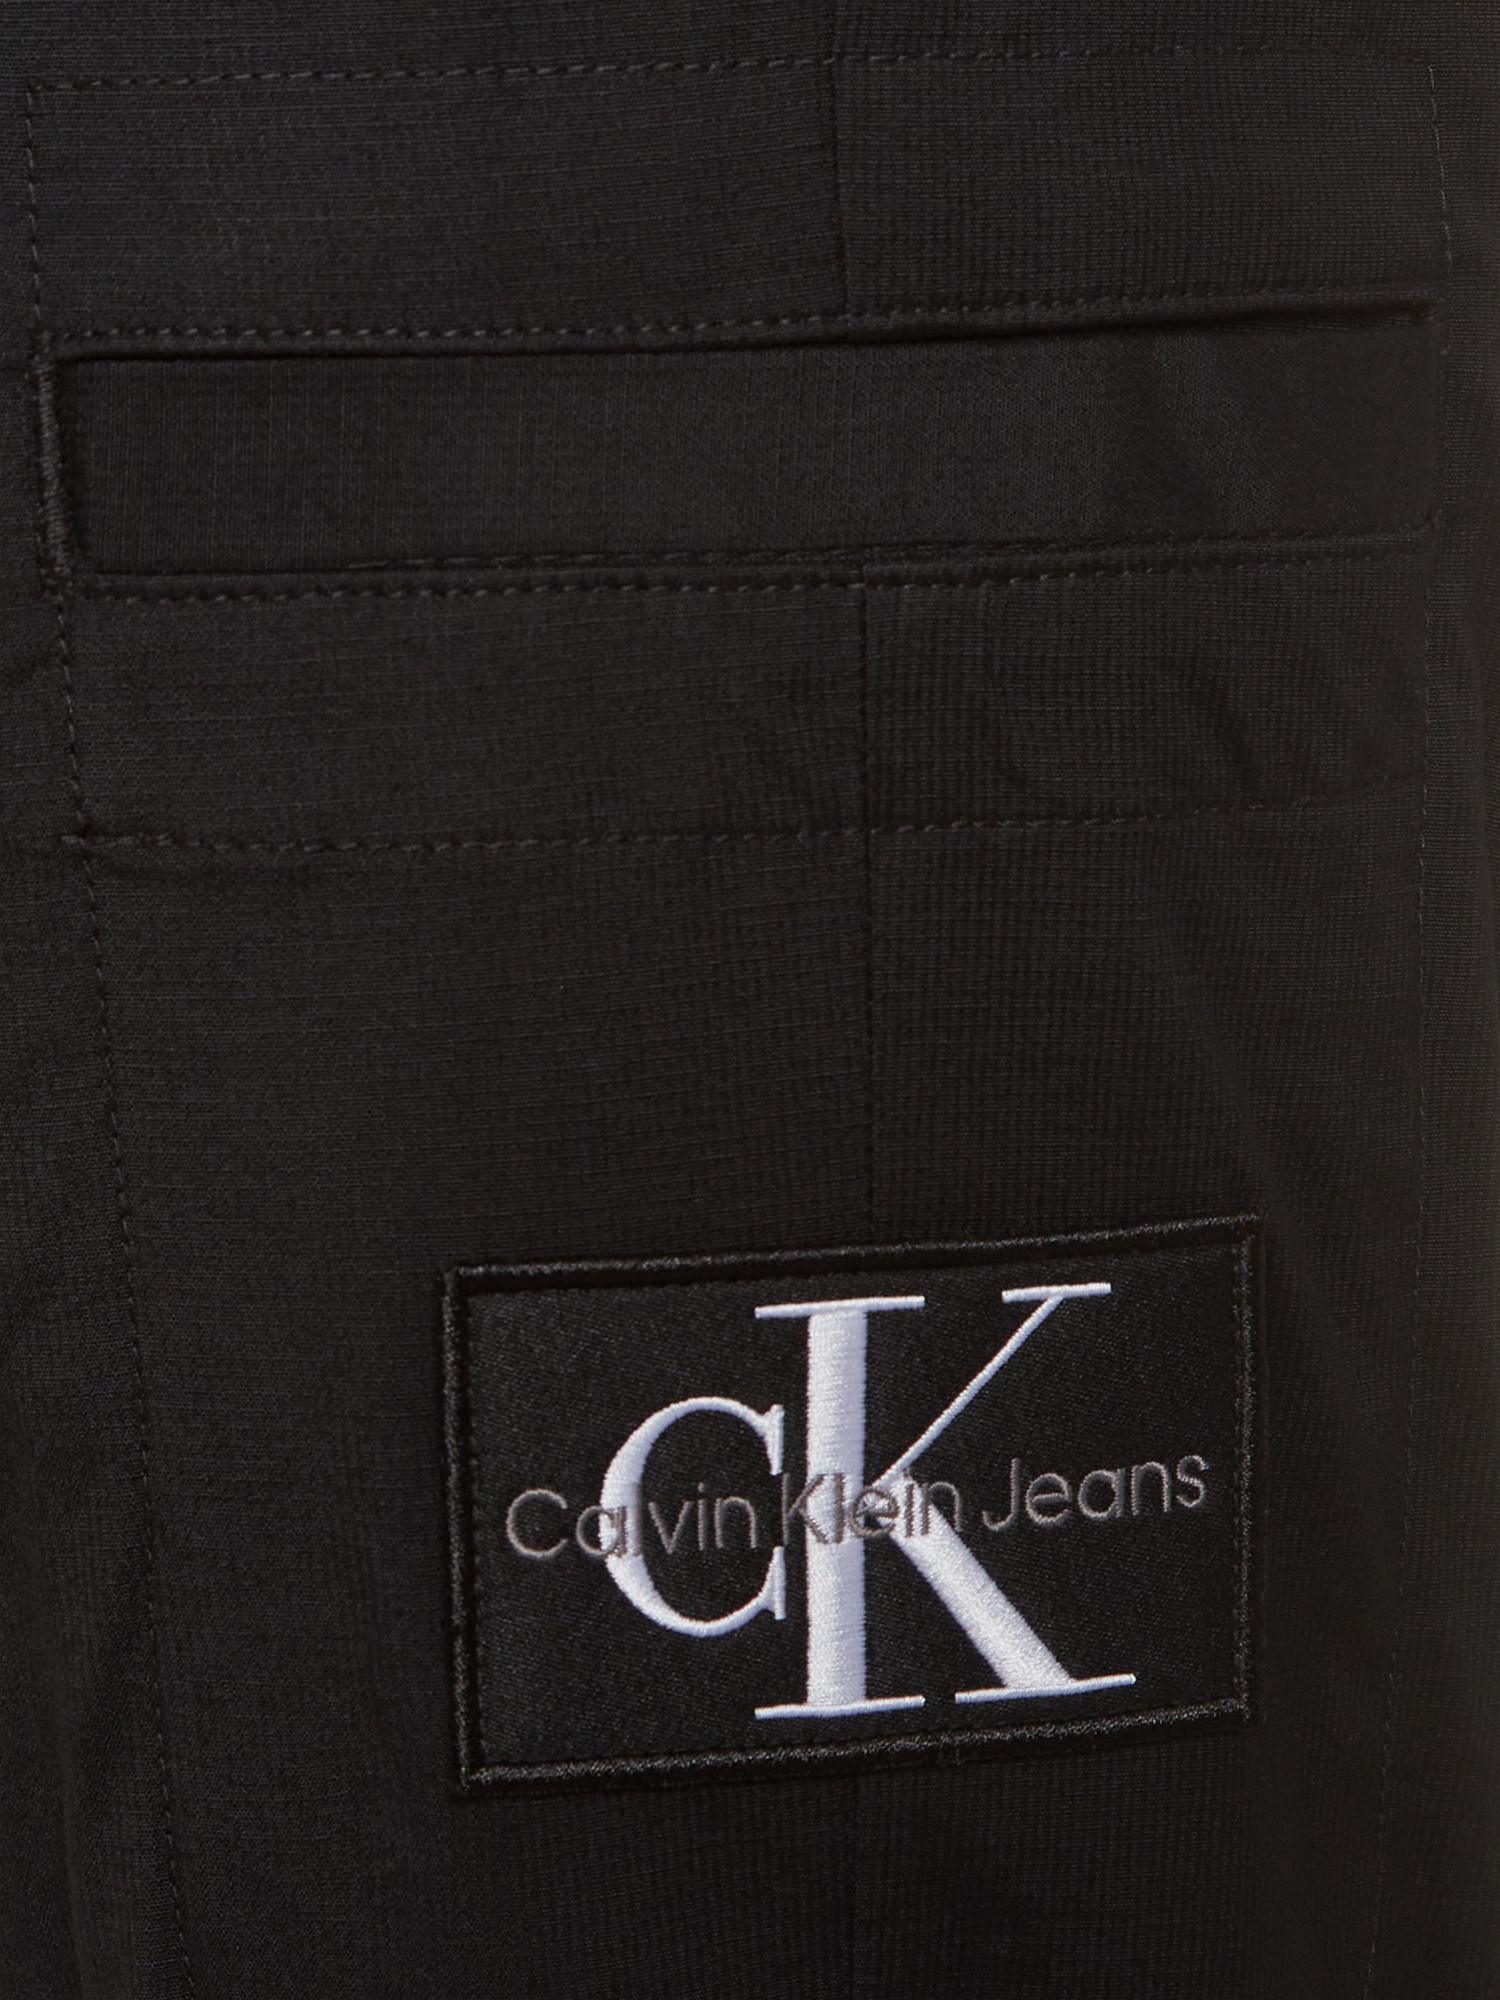 Calvin Klein Jeans -Pantaloni chino con logo, Nero, large image number 2